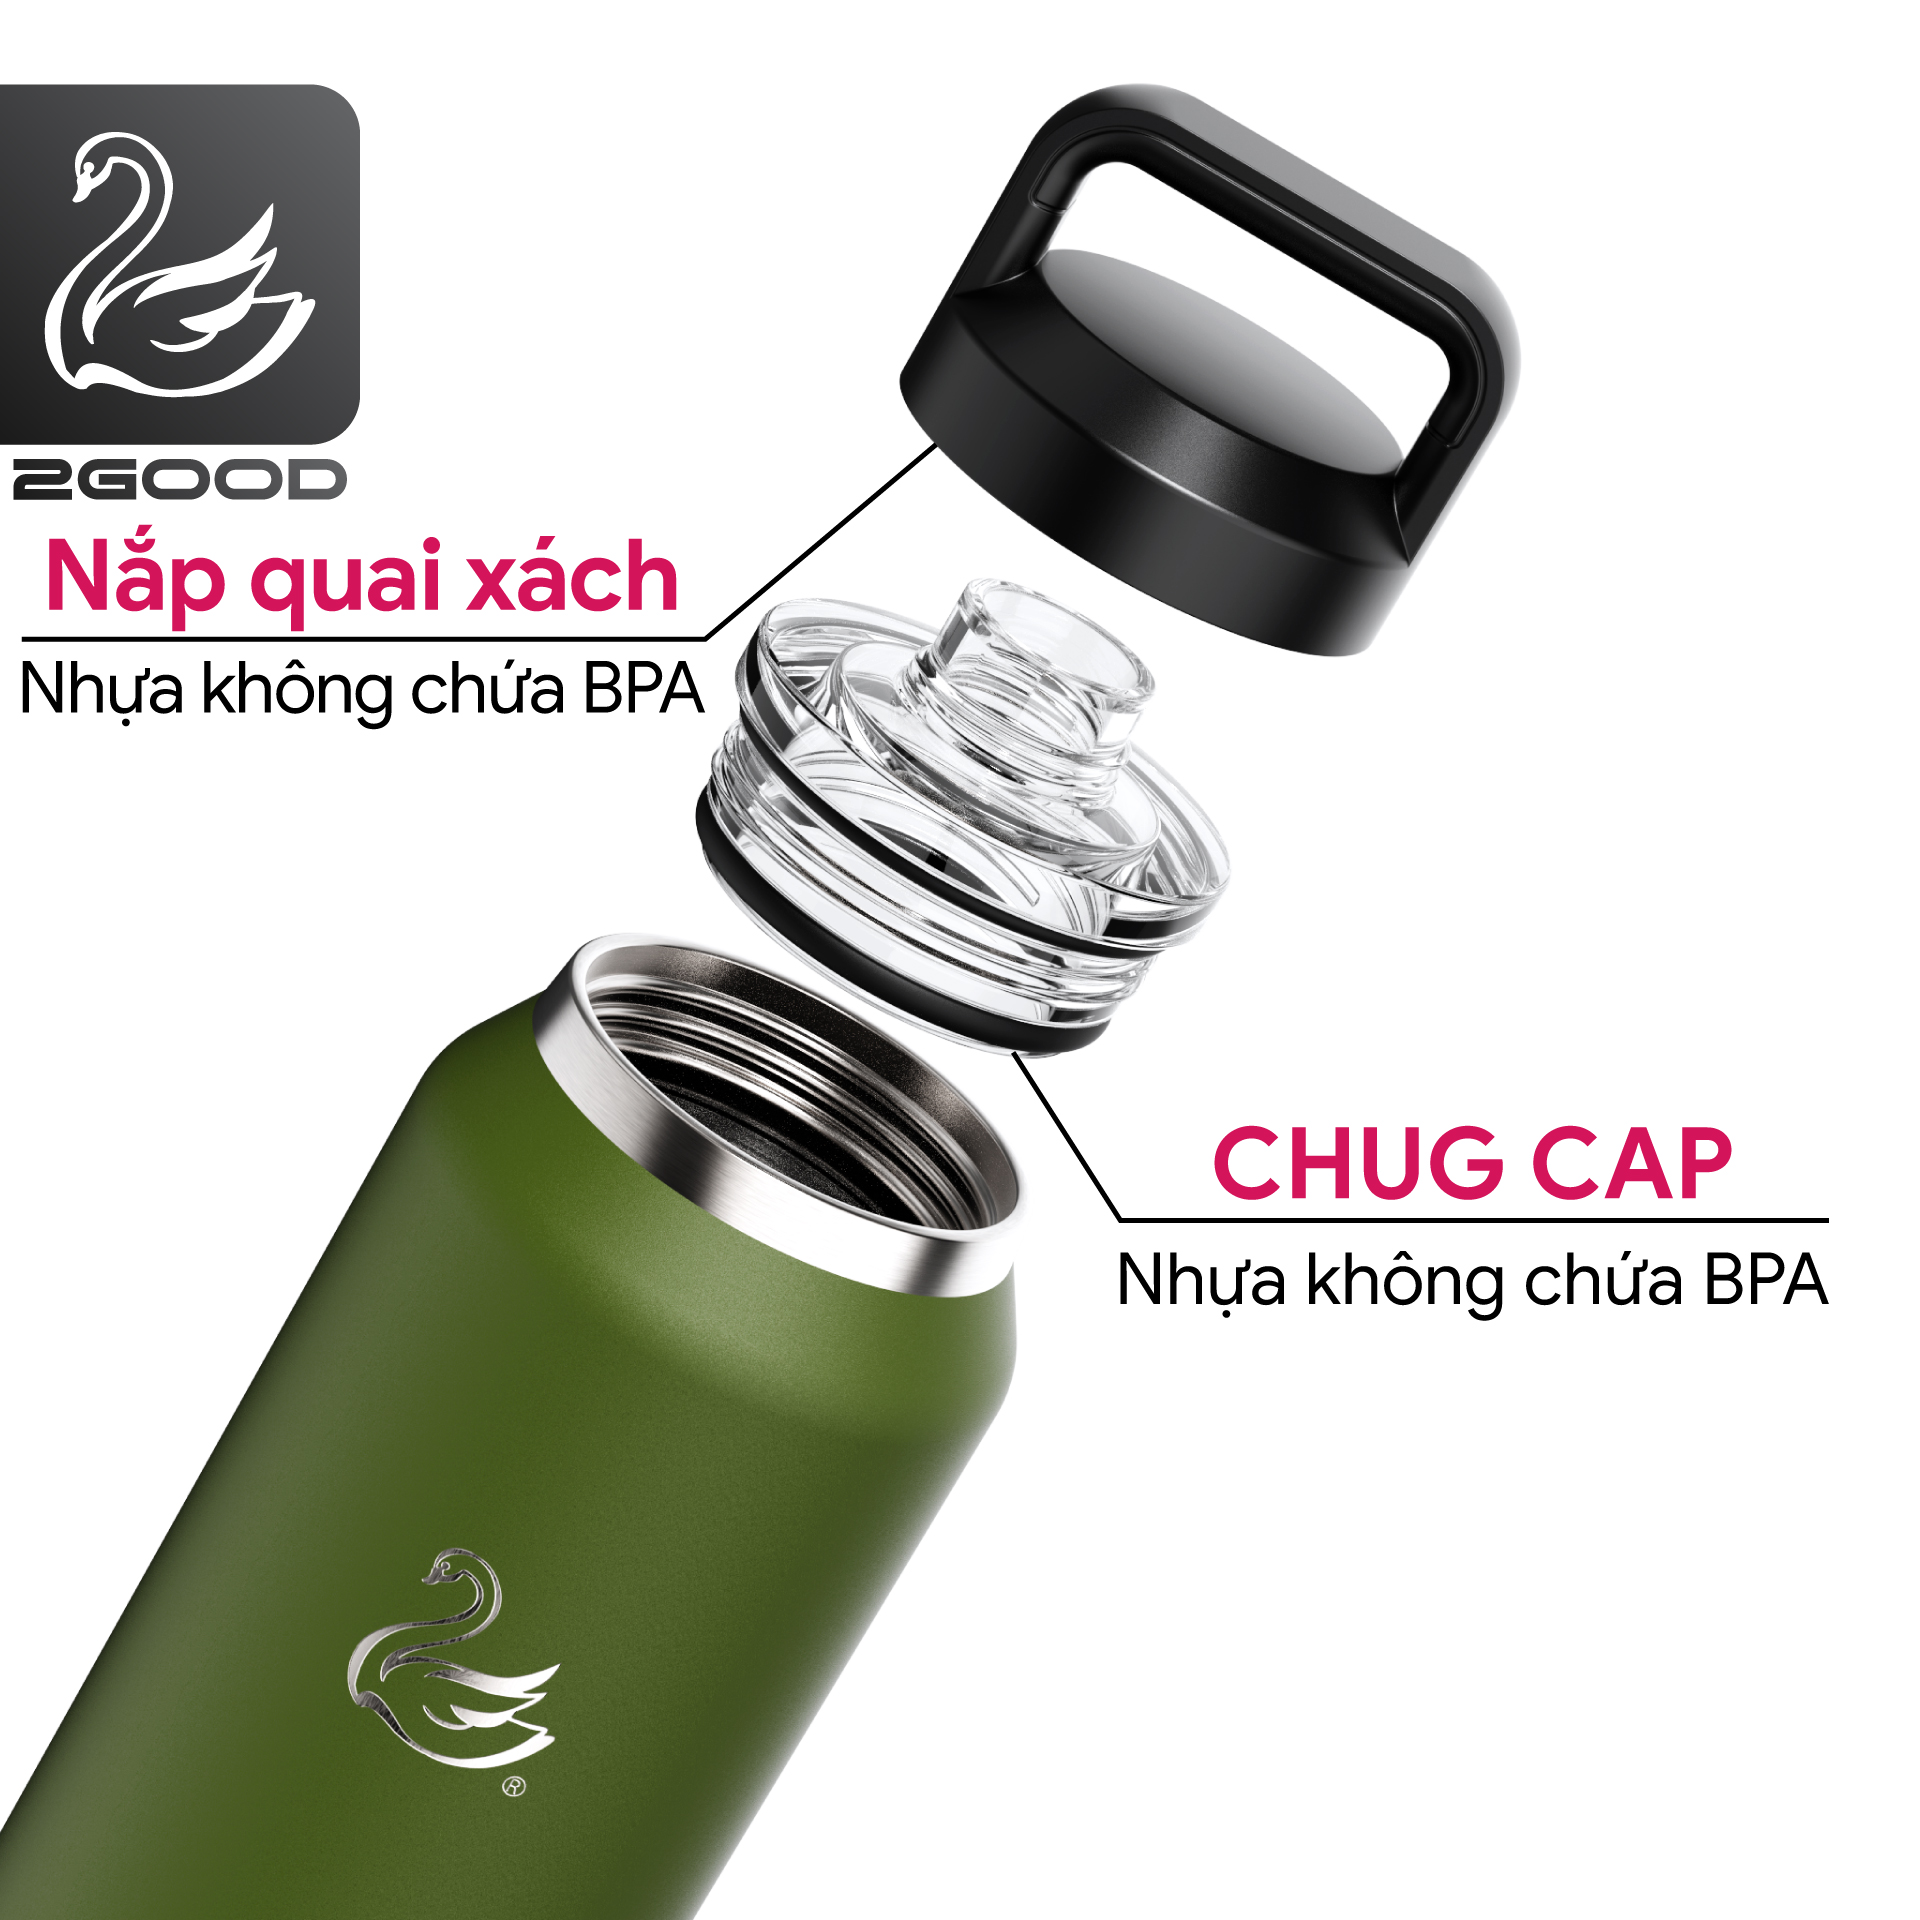 Bình giữ nhiệt 2GOOD Chug Cap CC-01 (1000ml)